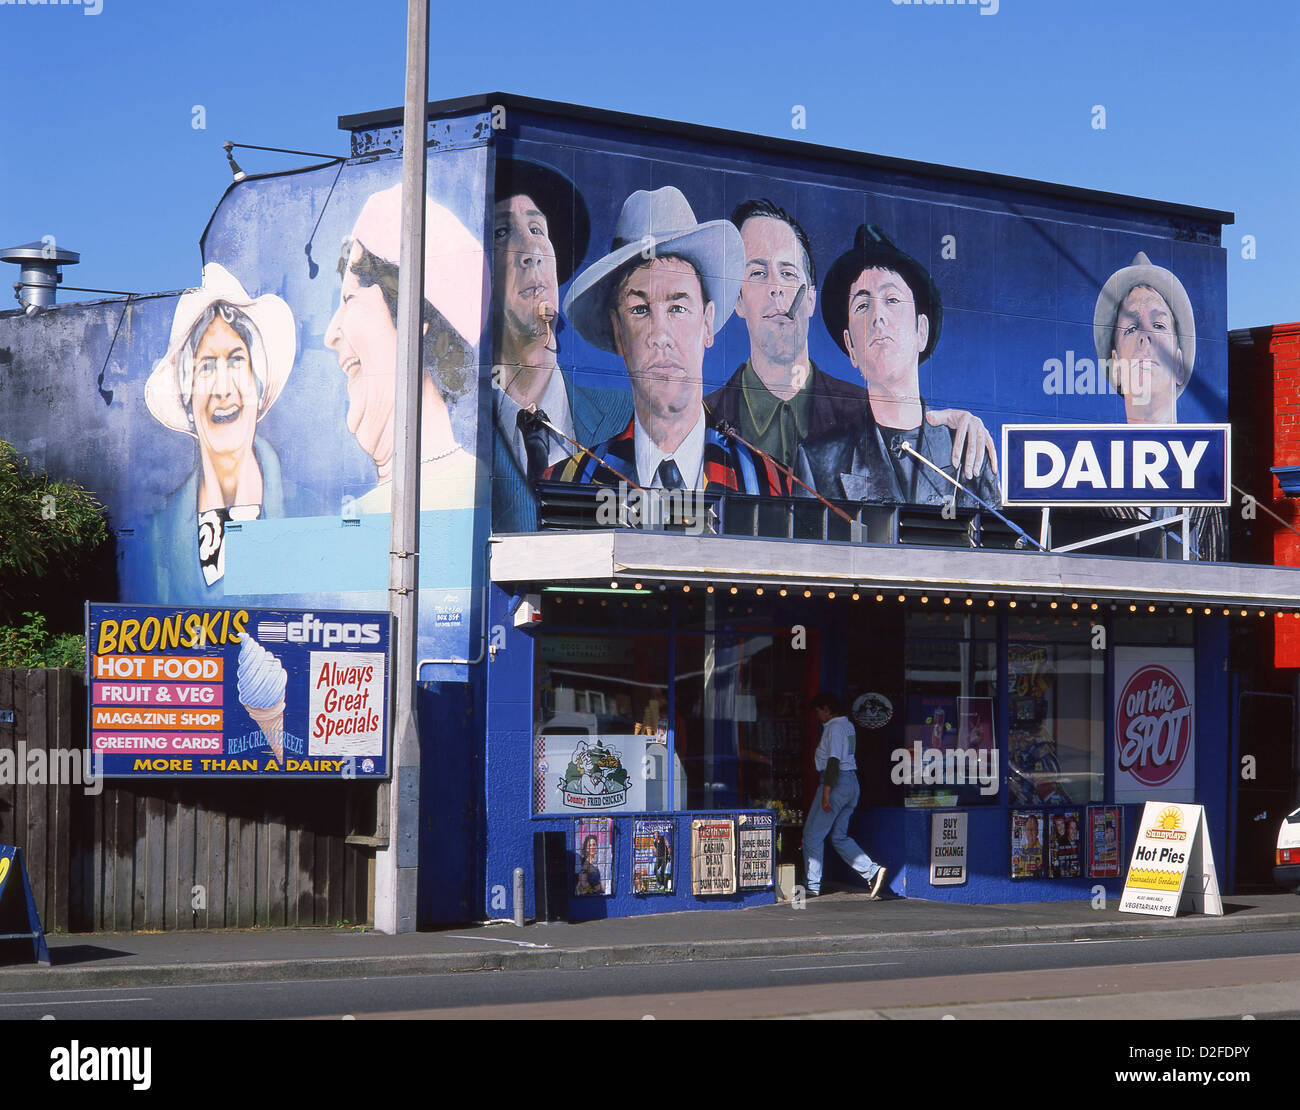 Los murales en local de productos lácteos (quiosco), Waltham, Christchurch, distrito de Canterbury, Isla del Sur, Nueva Zelanda Foto de stock